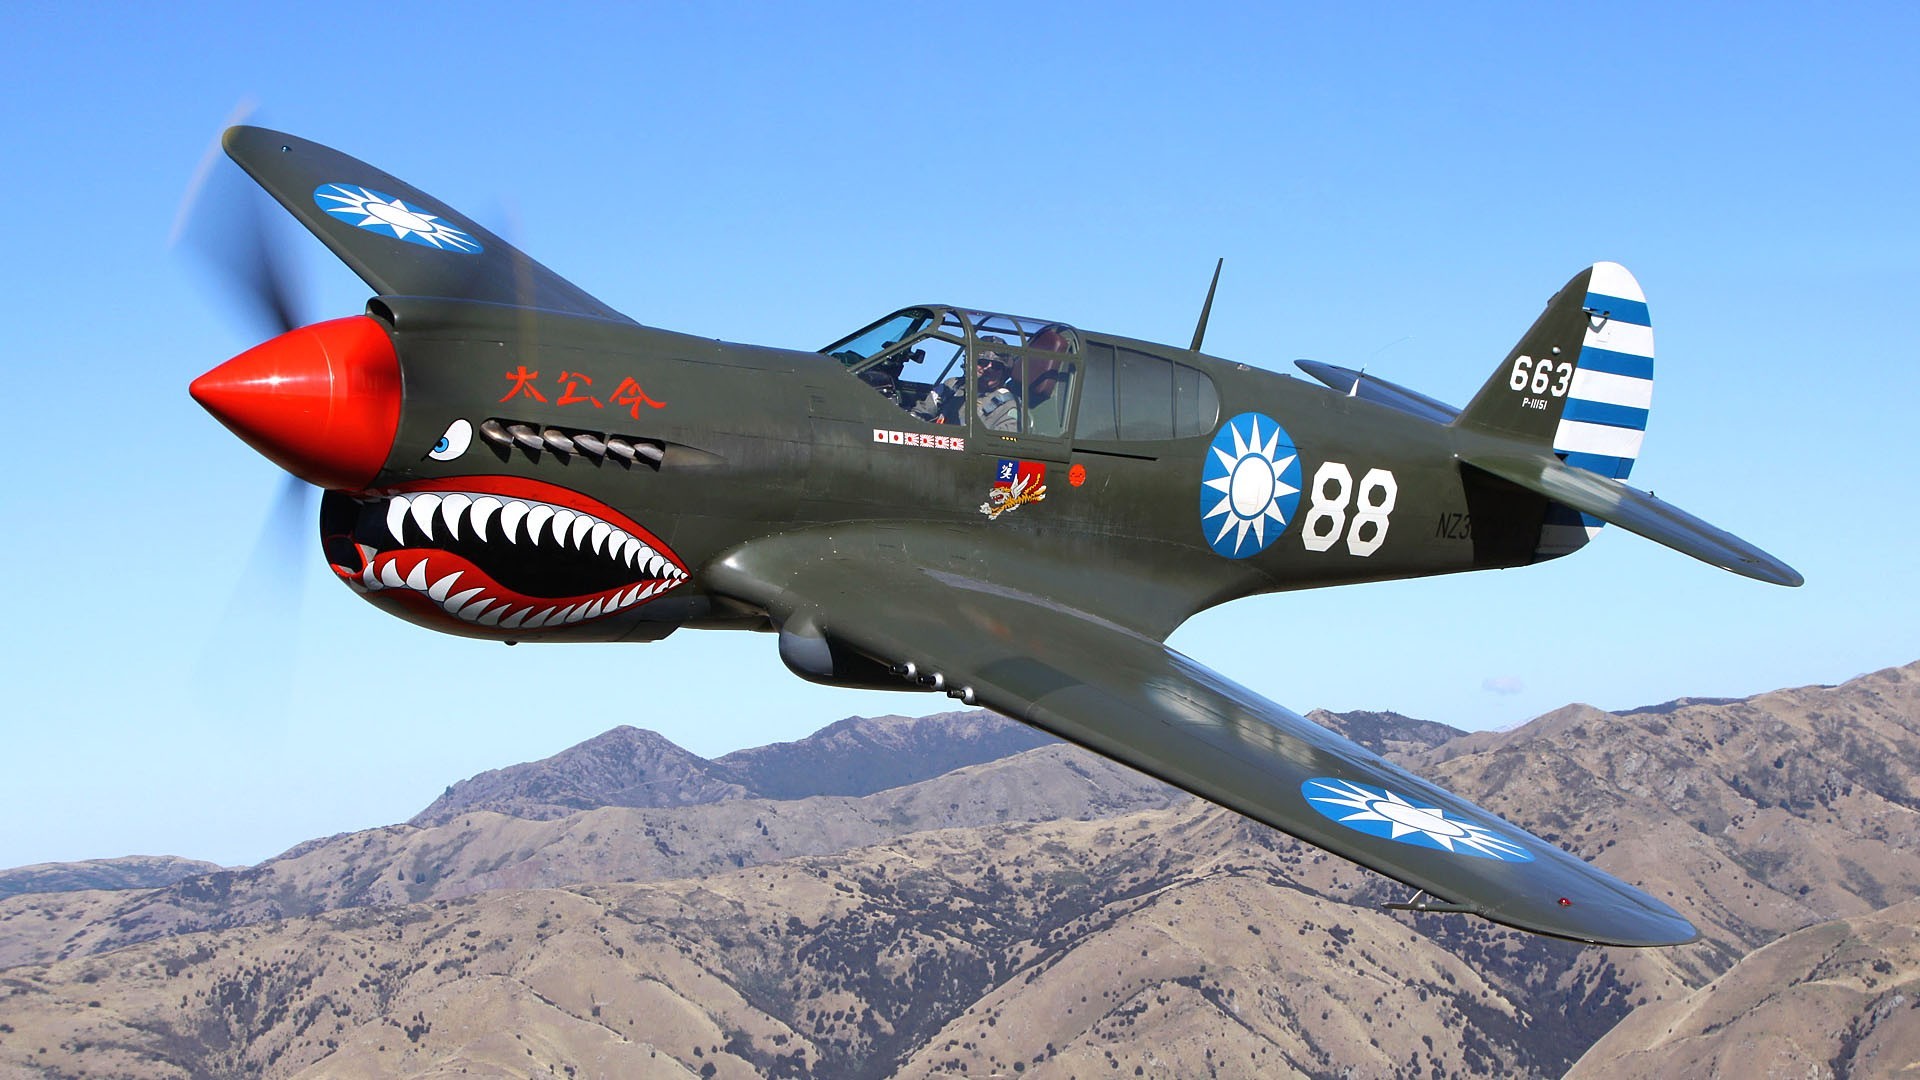 1920x1080 aircraft military World War II Warbird Curtiss P 40 fighters wallpaper  